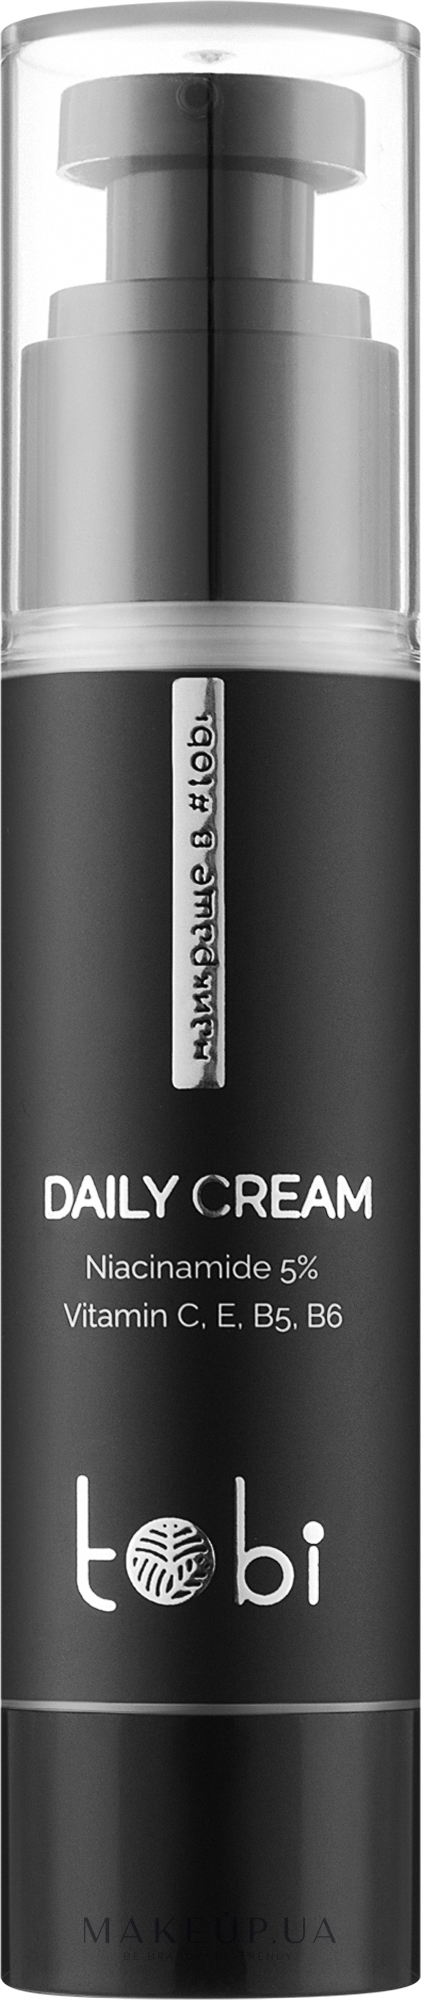 Крем-флюид для лица с ниацинамидом 5% и витаминами - Tobi Daily Cream  — фото 50ml